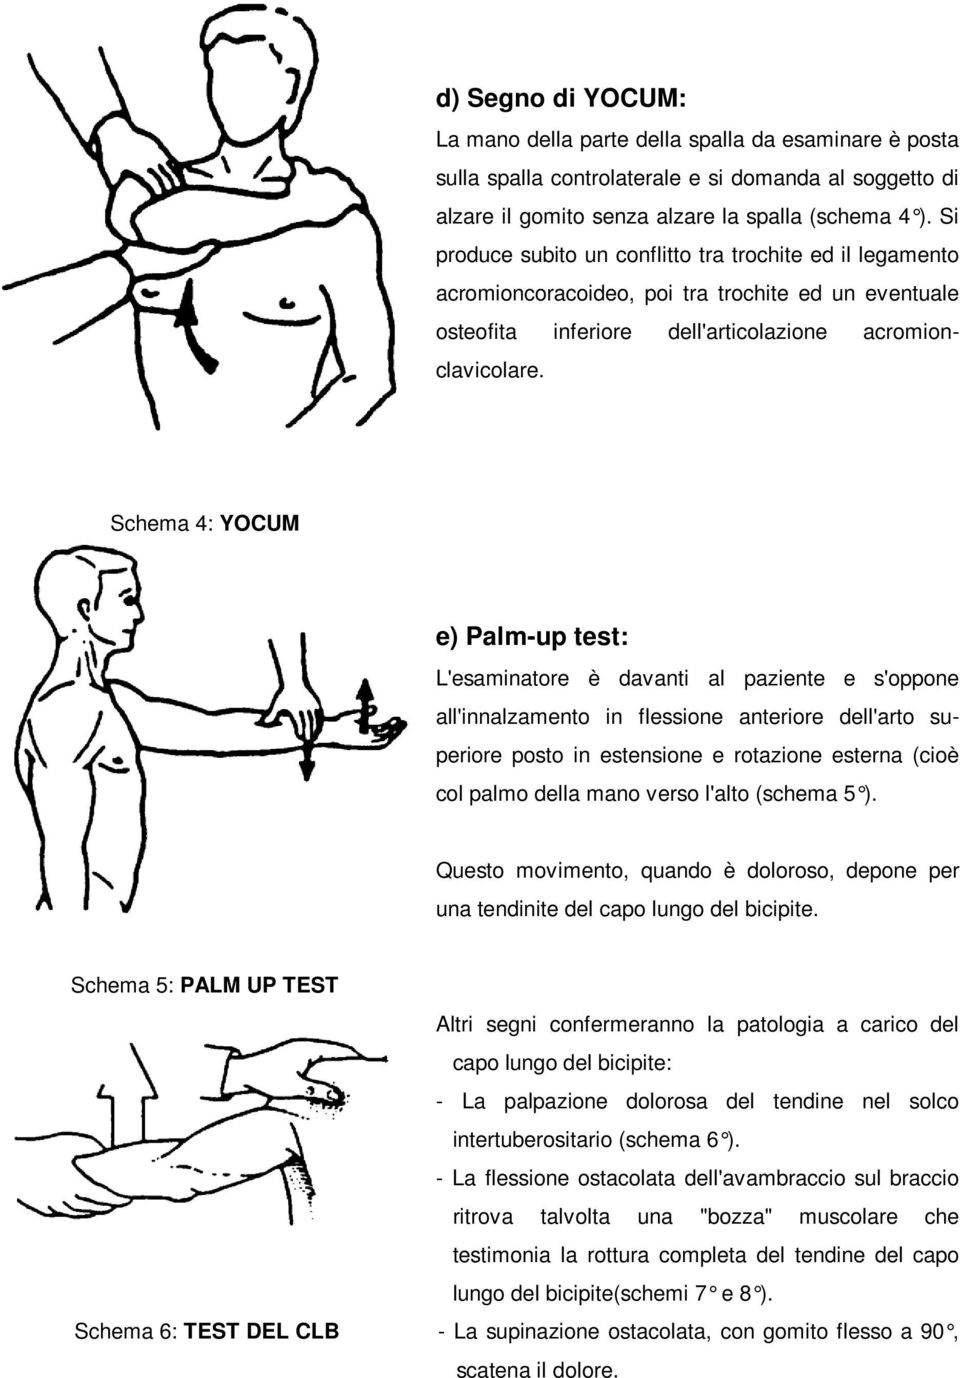 Schema 4: YOCUM e) Palm-up test: L'esaminatore è davanti al paziente e s'oppone all'innalzamento in flessione anteriore dell'arto superiore posto in estensione e rotazione esterna (cioè col palmo